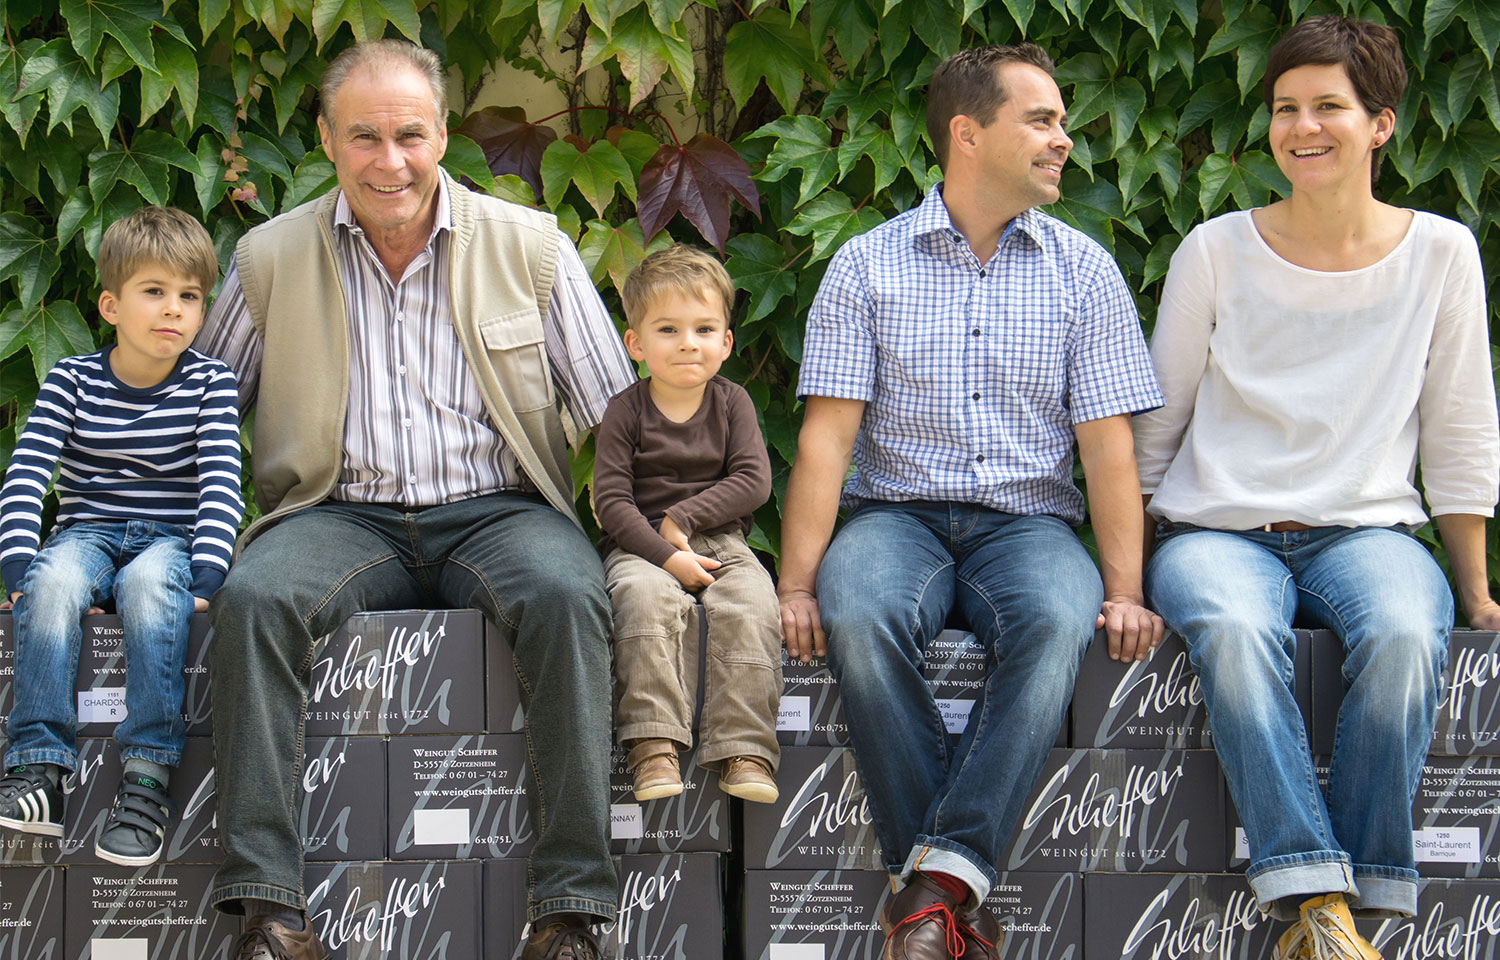 Winzer-Familie Scheffer (Mann, Frau, 2 Kinder und Großvater) sitzen auf Weinkartons. 